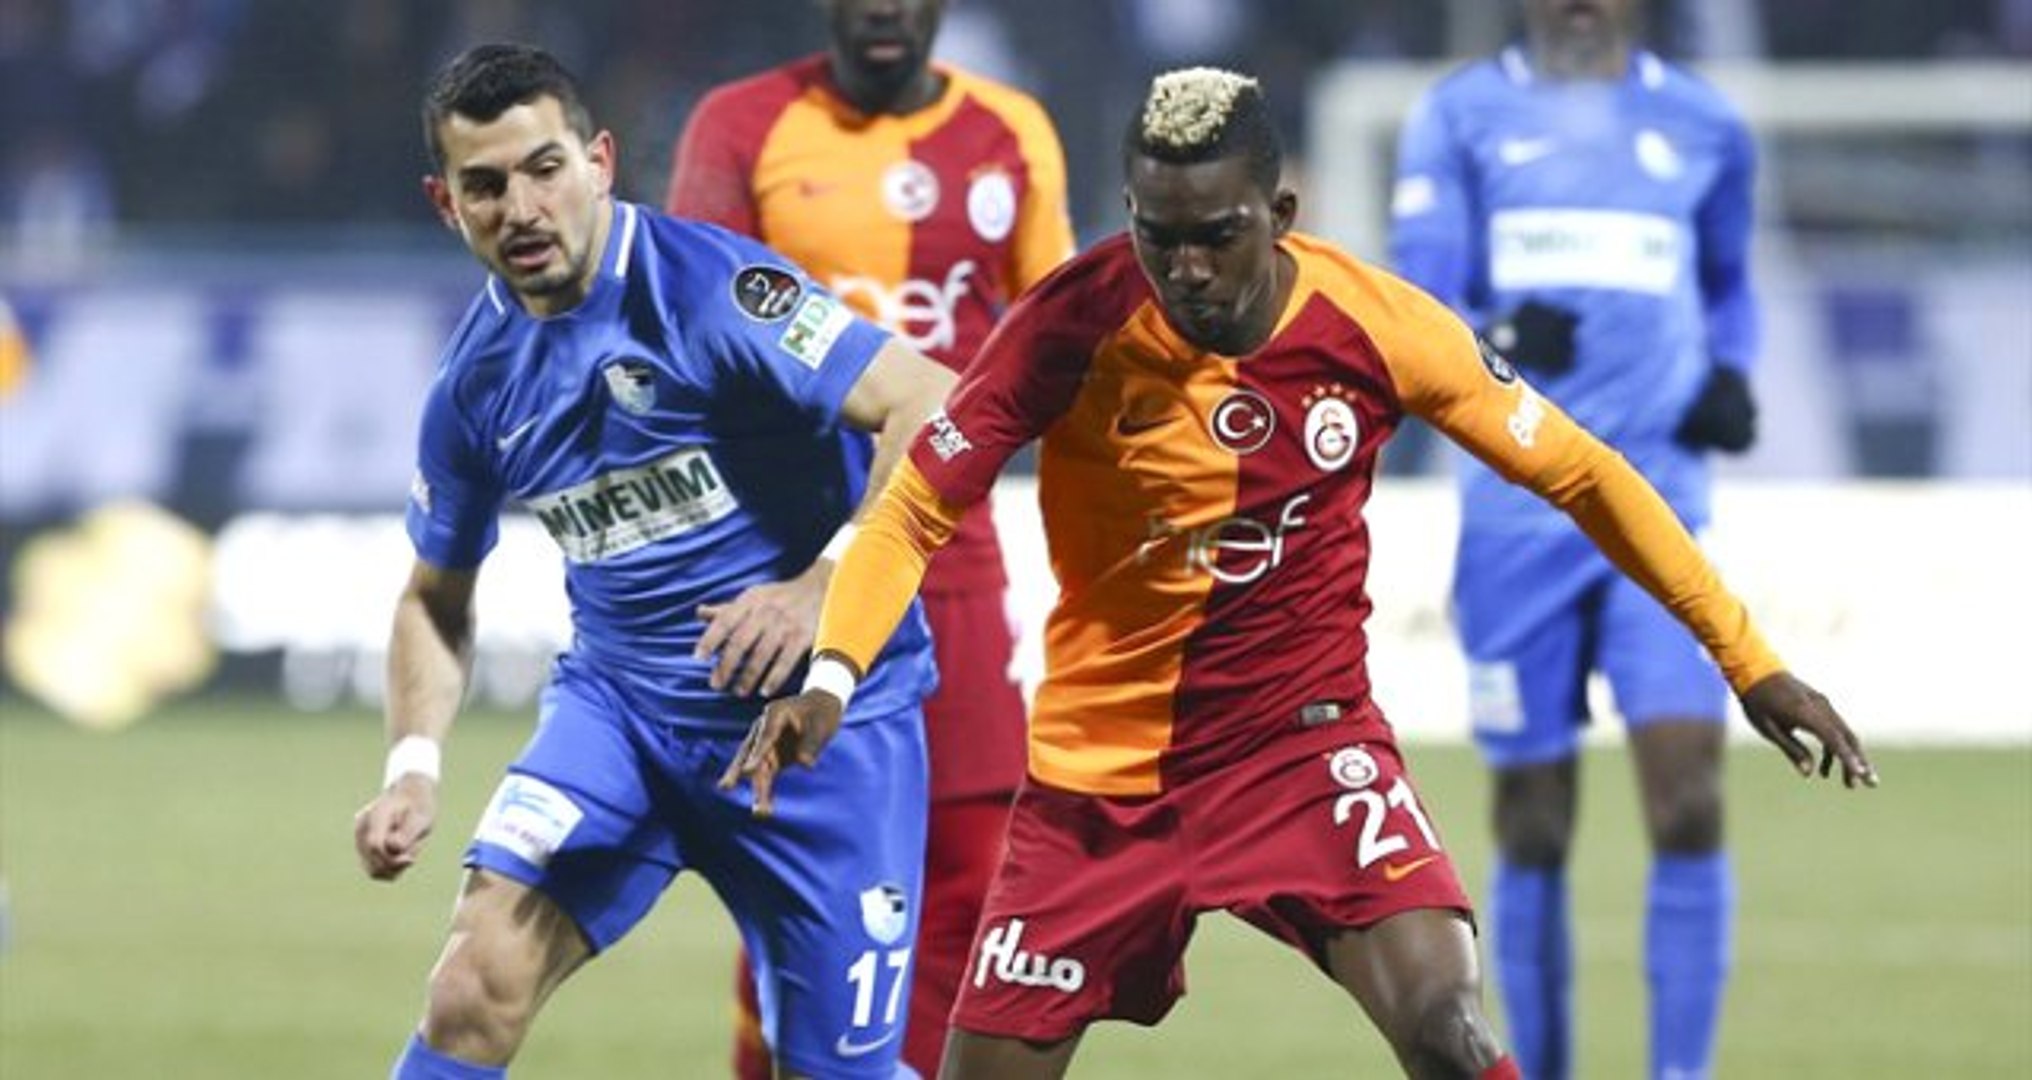 Galatasaray, BB Erzurumspor ile 1-1 Berabere Kaldı - Dailymotion Video